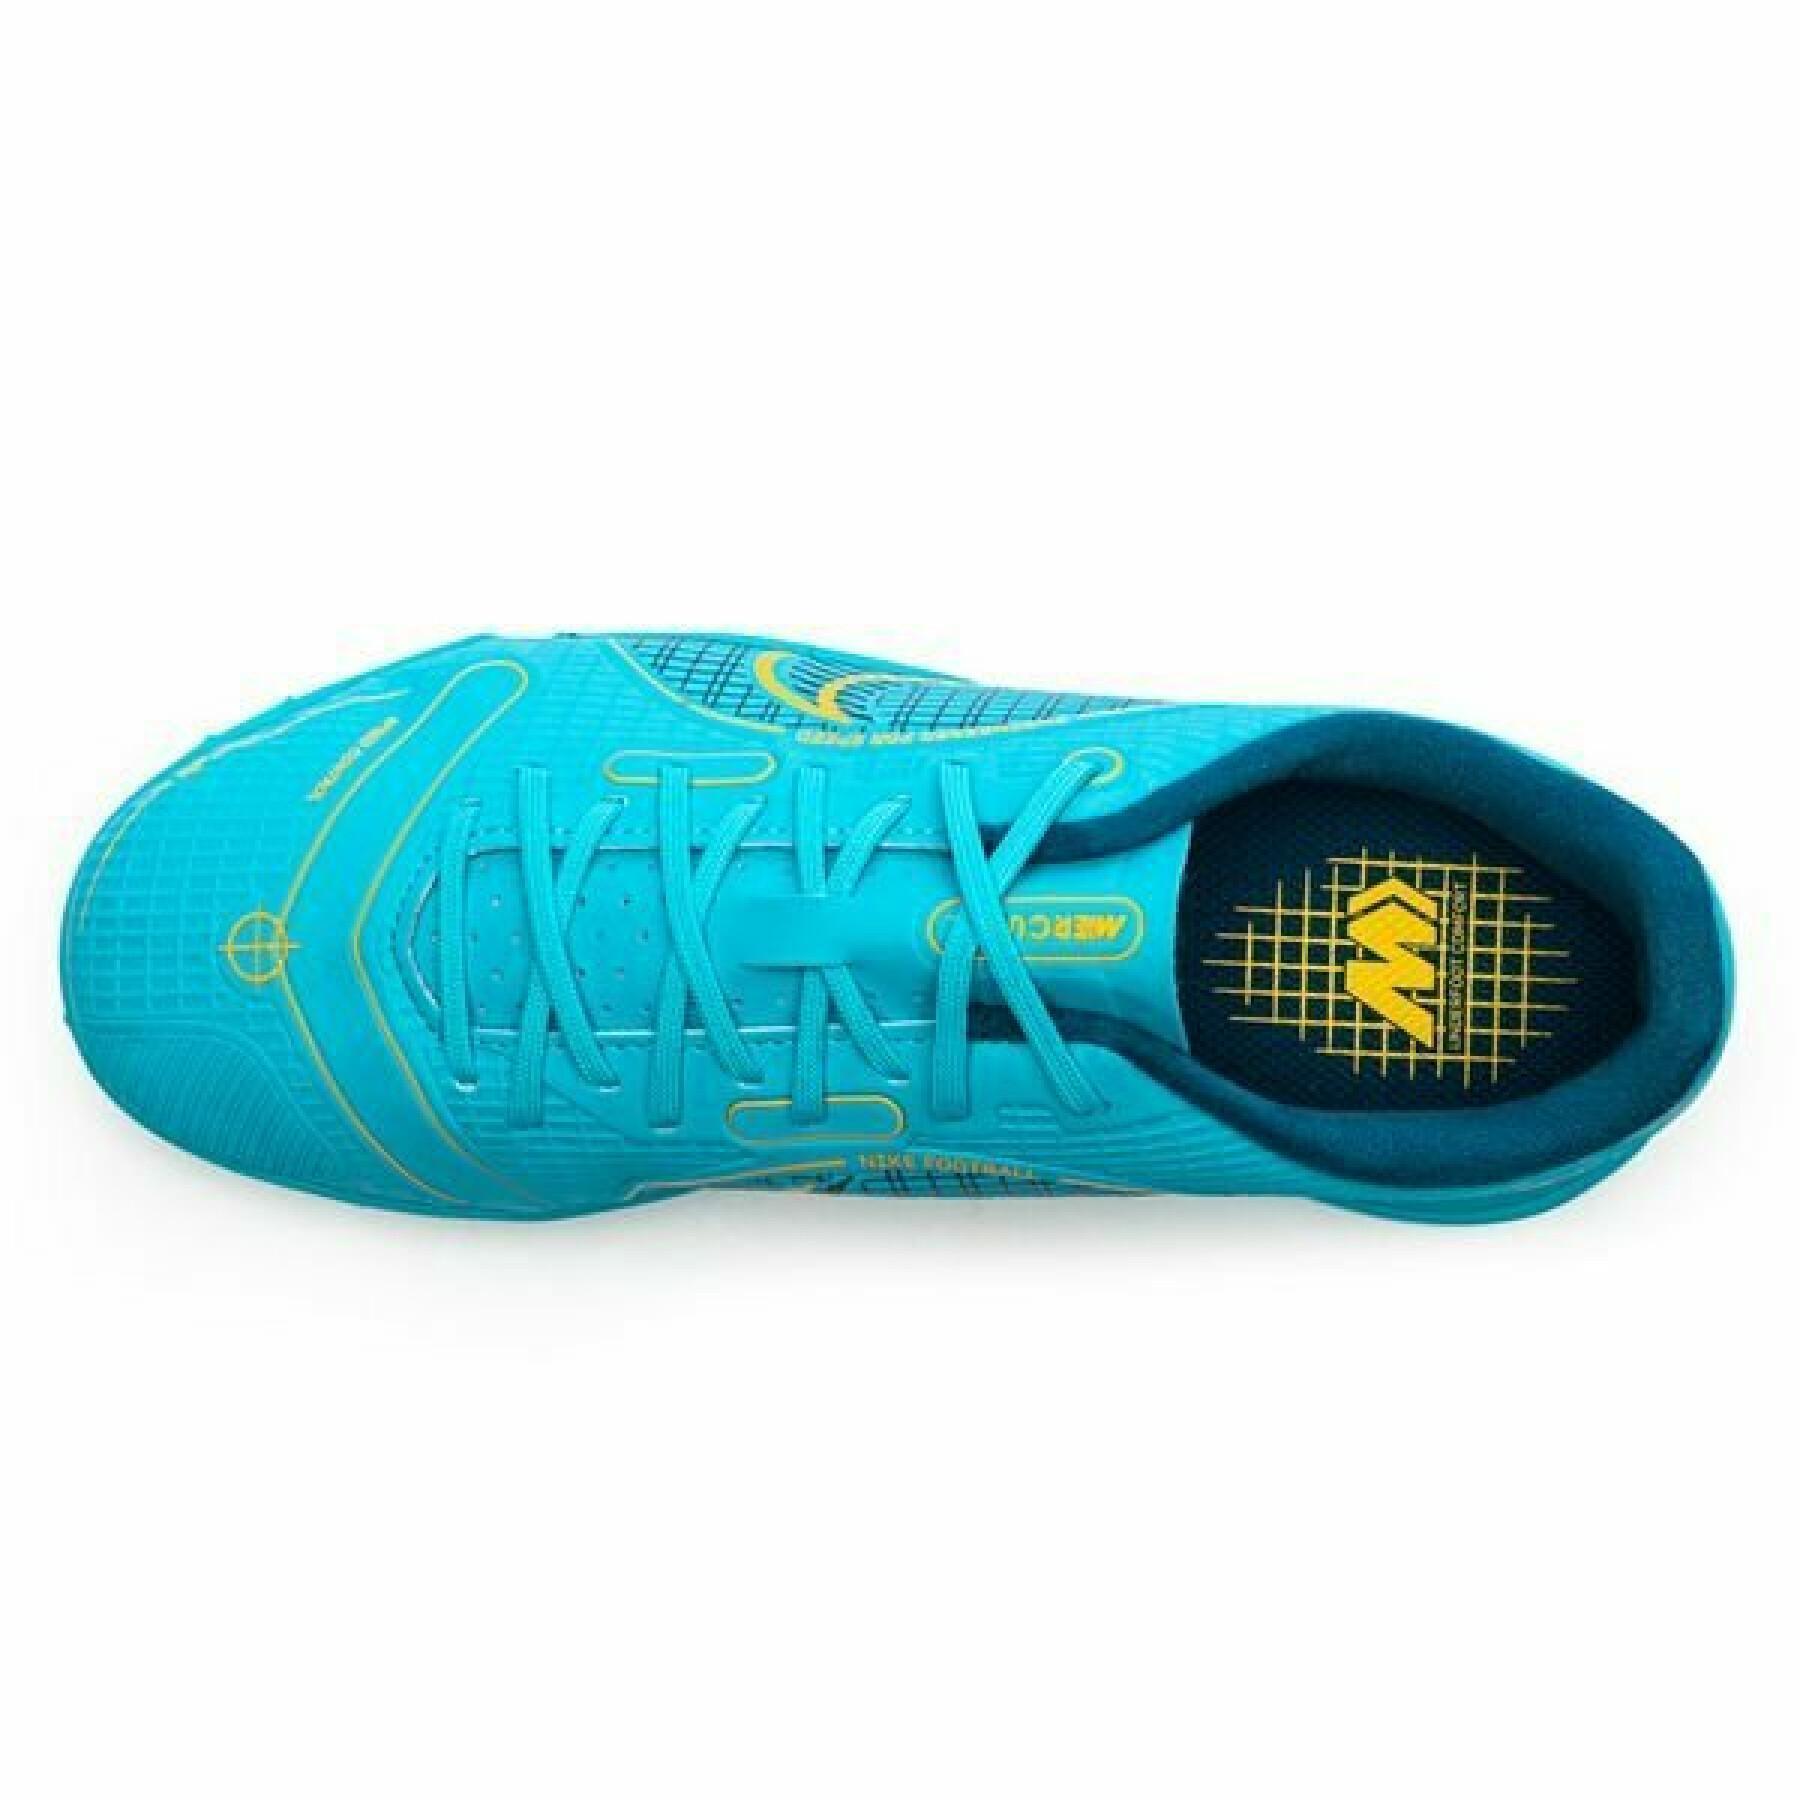 Voetbalschoenen voor kinderen Nike Jr vapor 14 academy TF -Blueprint Pack